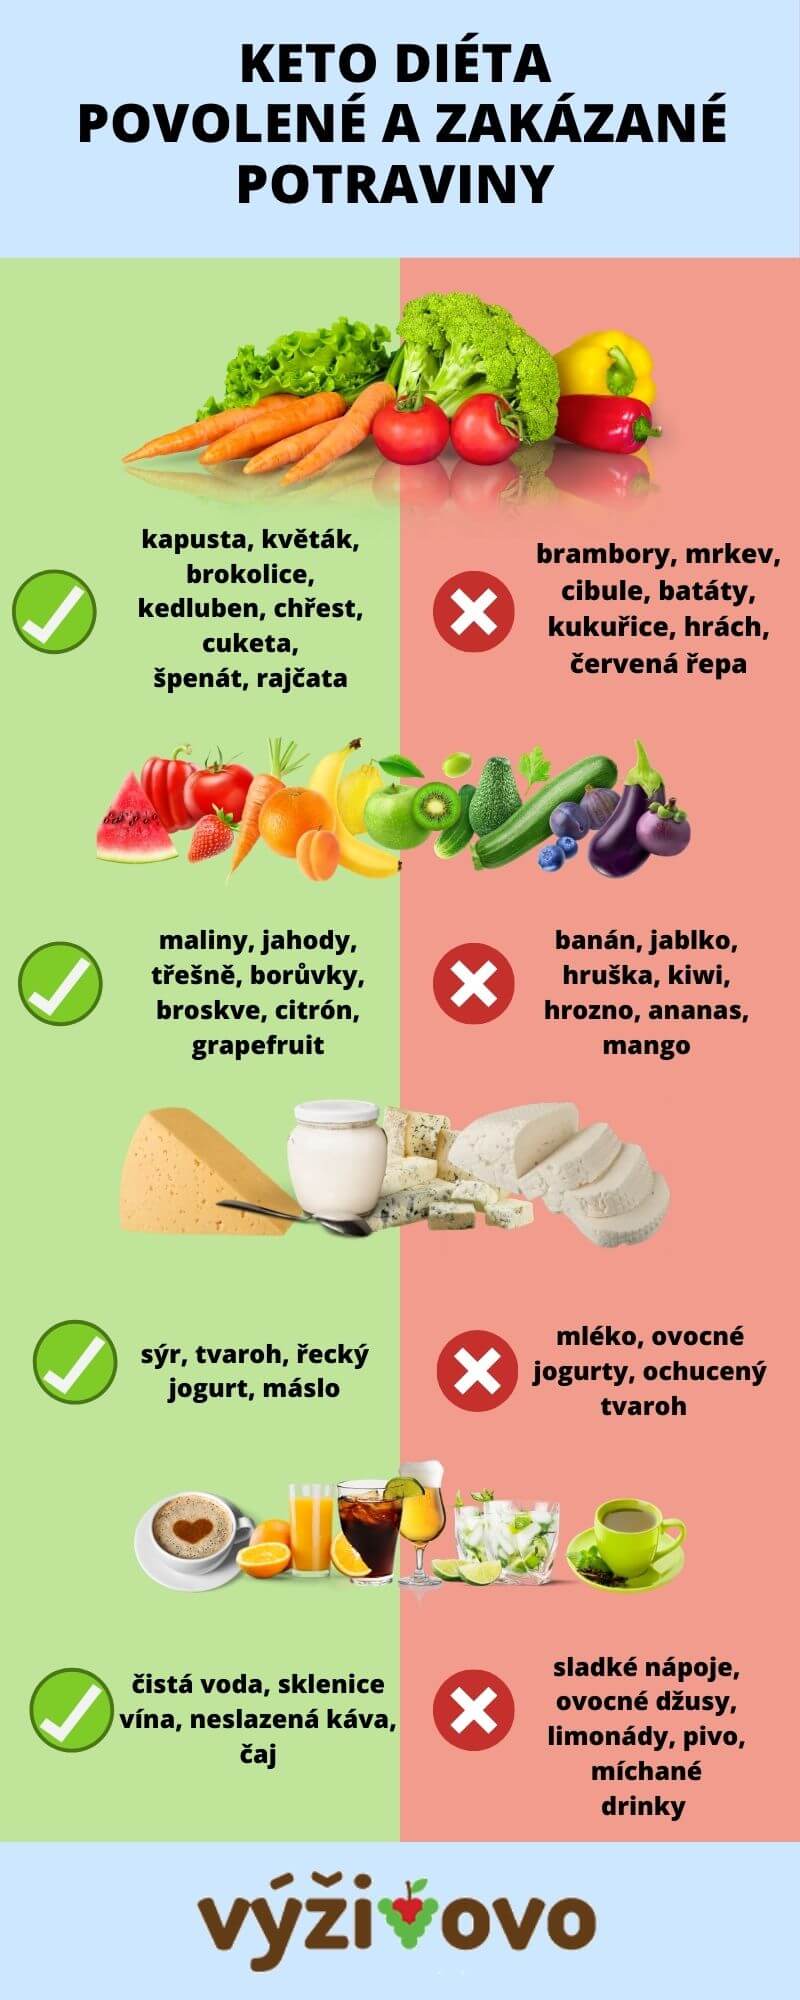 Infografika - povolené a zakázané potraviny při keto dietě